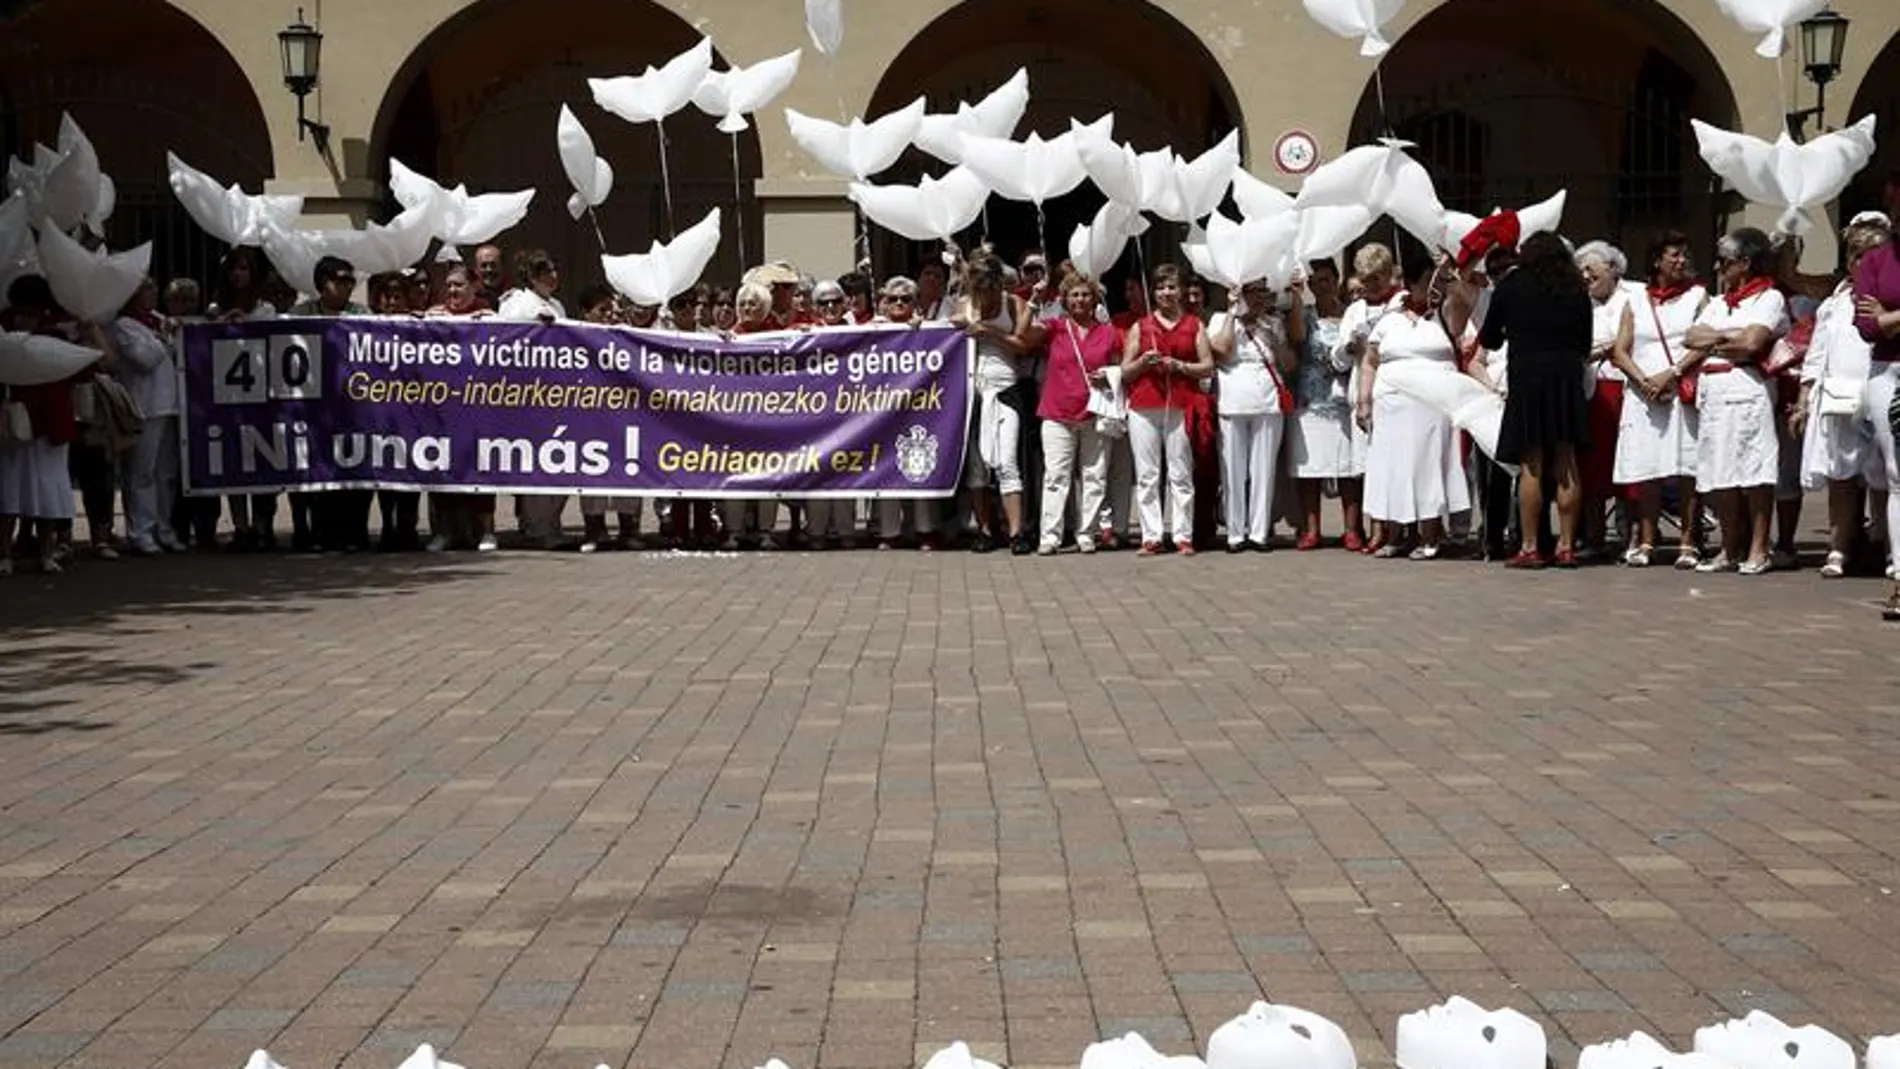 Concentración en Burlada, Navarra, contra la violencia de género